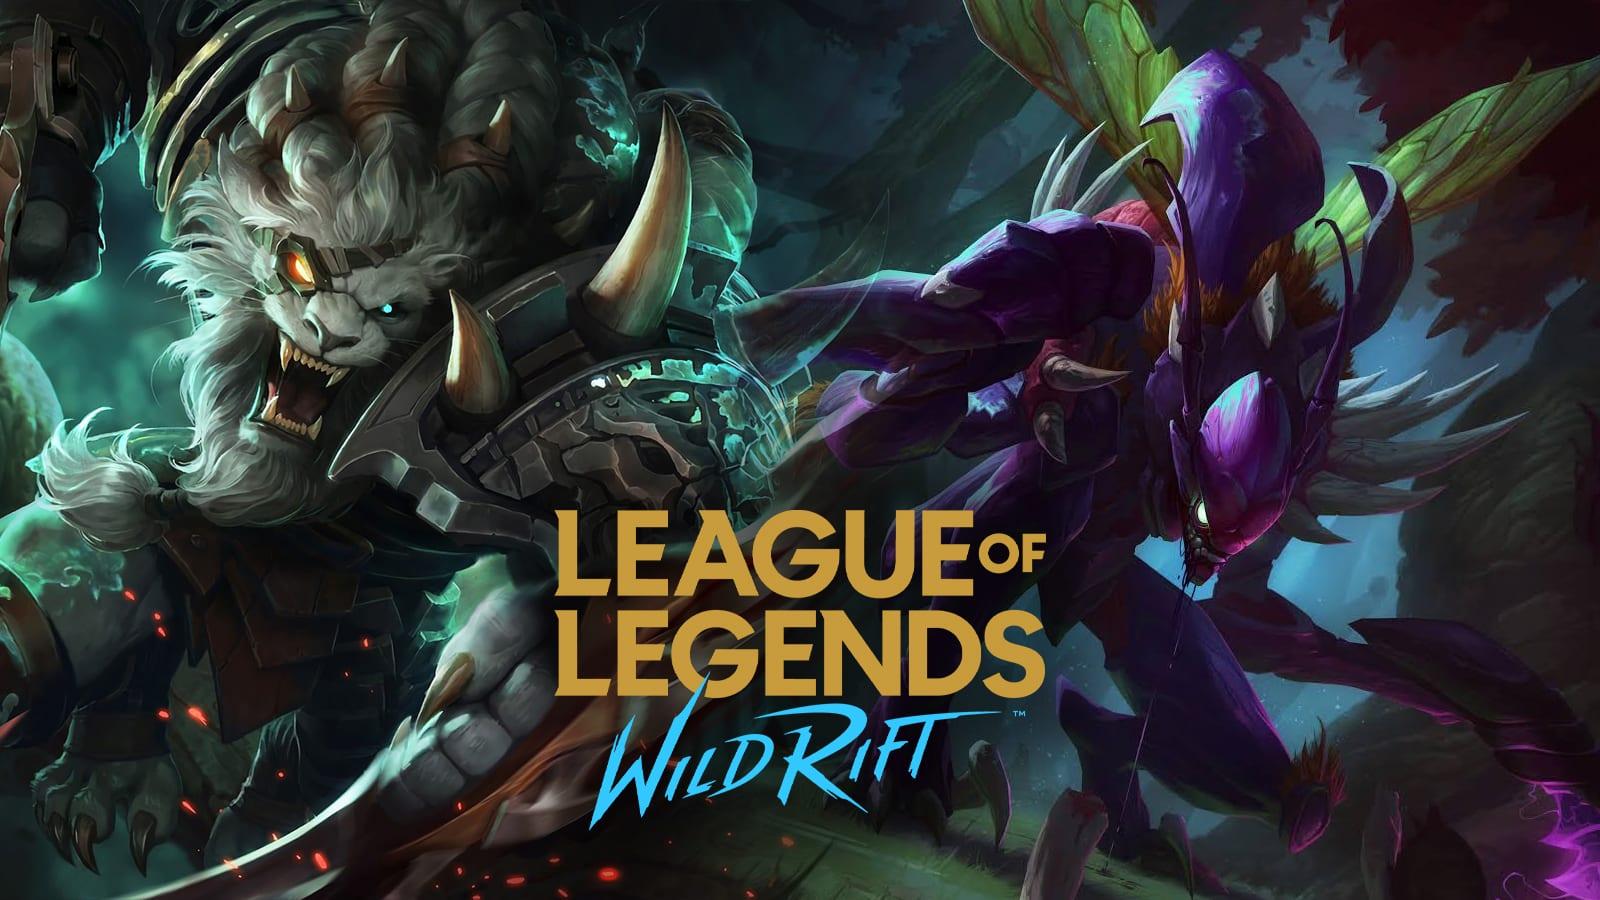 Video Game League of Legends: Wild Rift HD Wallpaper